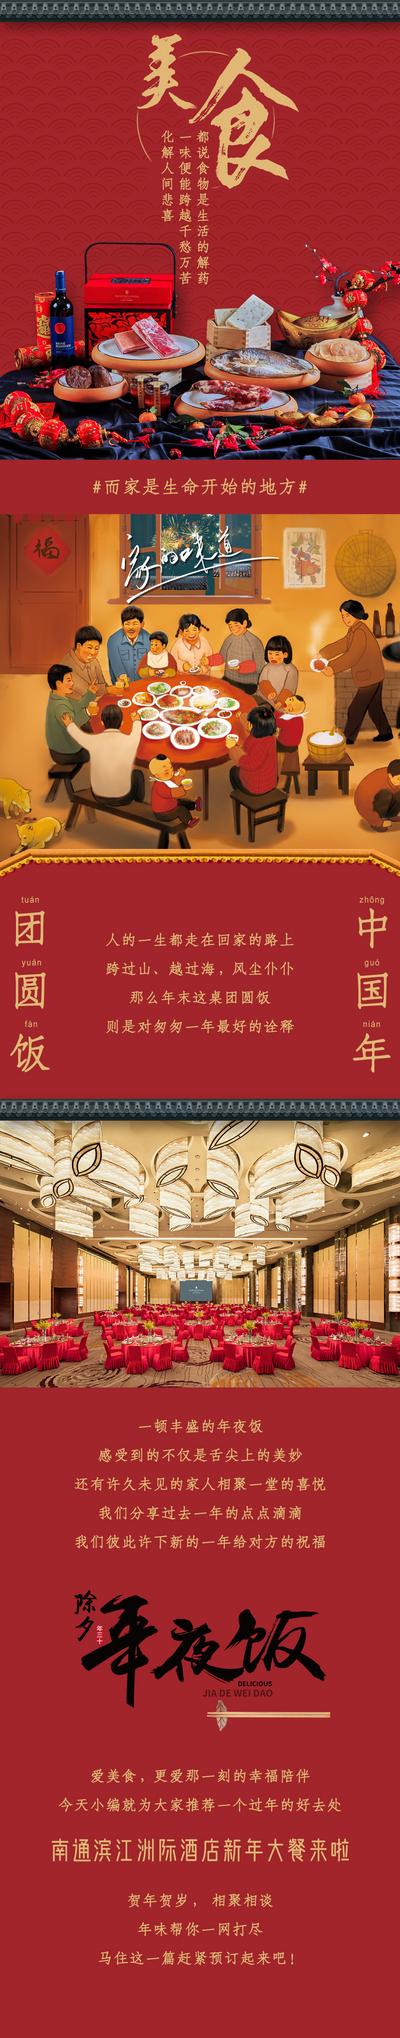 南门网 海报 长图 中国传统节日 新年 年夜饭 酒店 除夕 美食